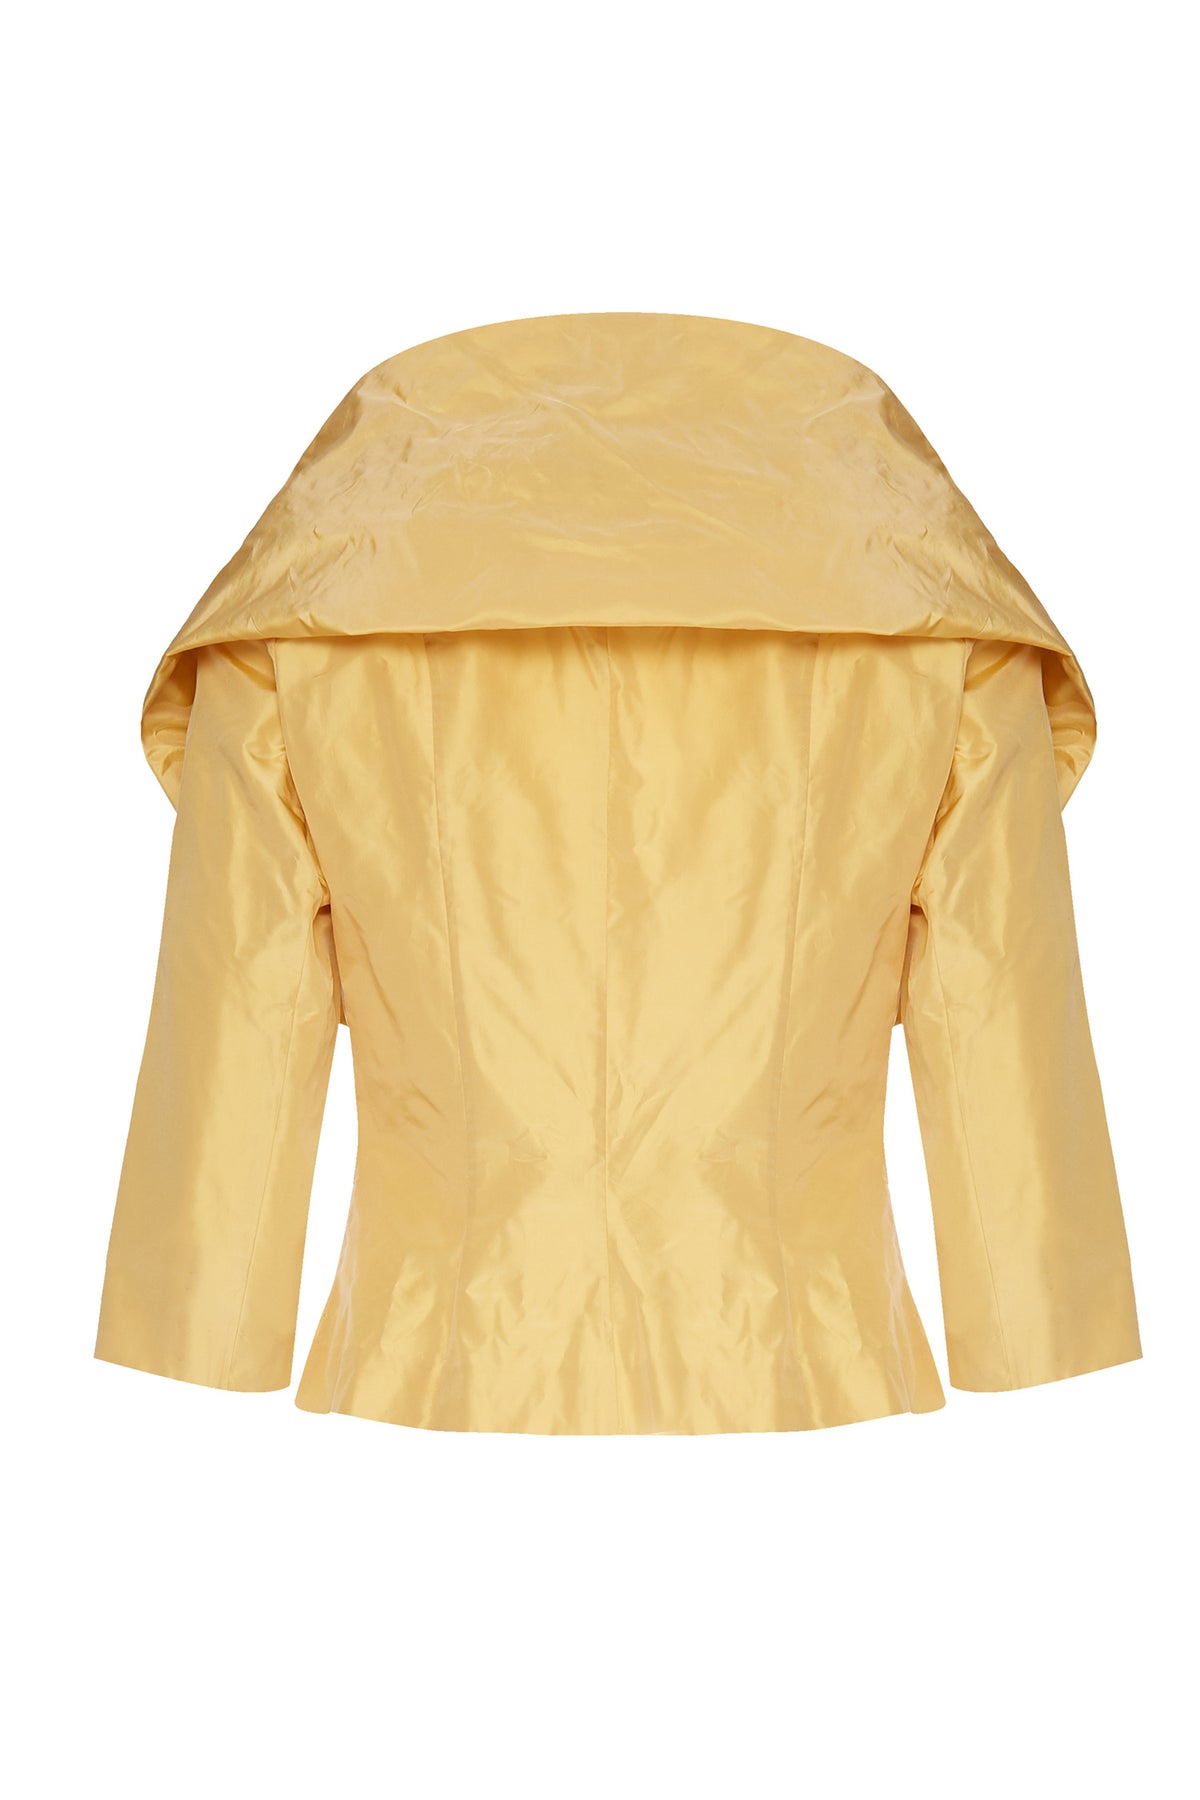 1950 Renato Nucci Silk Brocade Yellow Silk Jacket